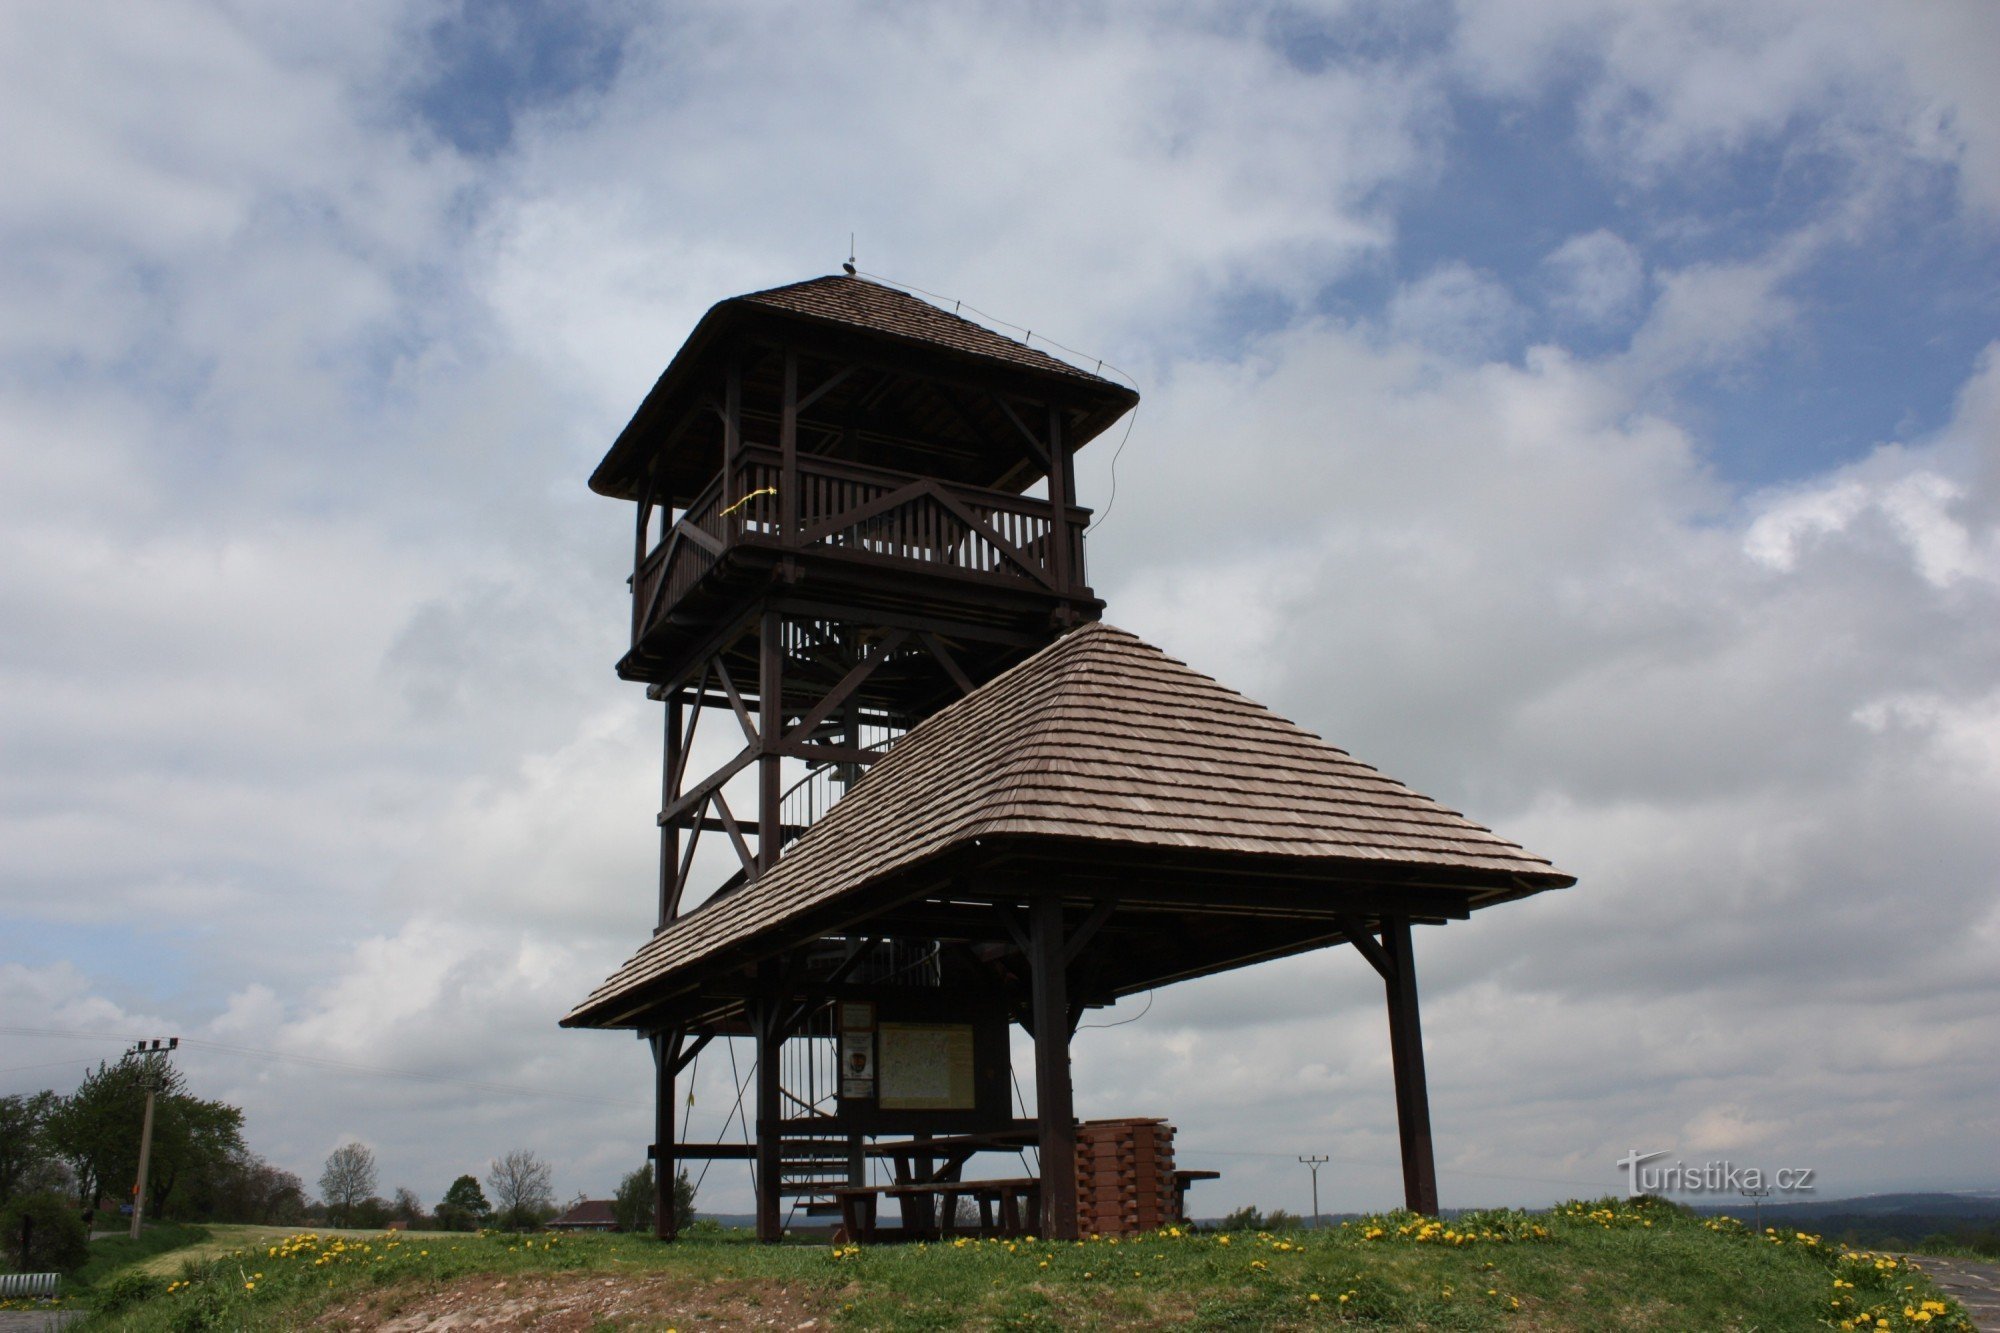 Tháp quan sát bằng gỗ Boika trên con đường mòn của người Celt ở dãy núi Sắt